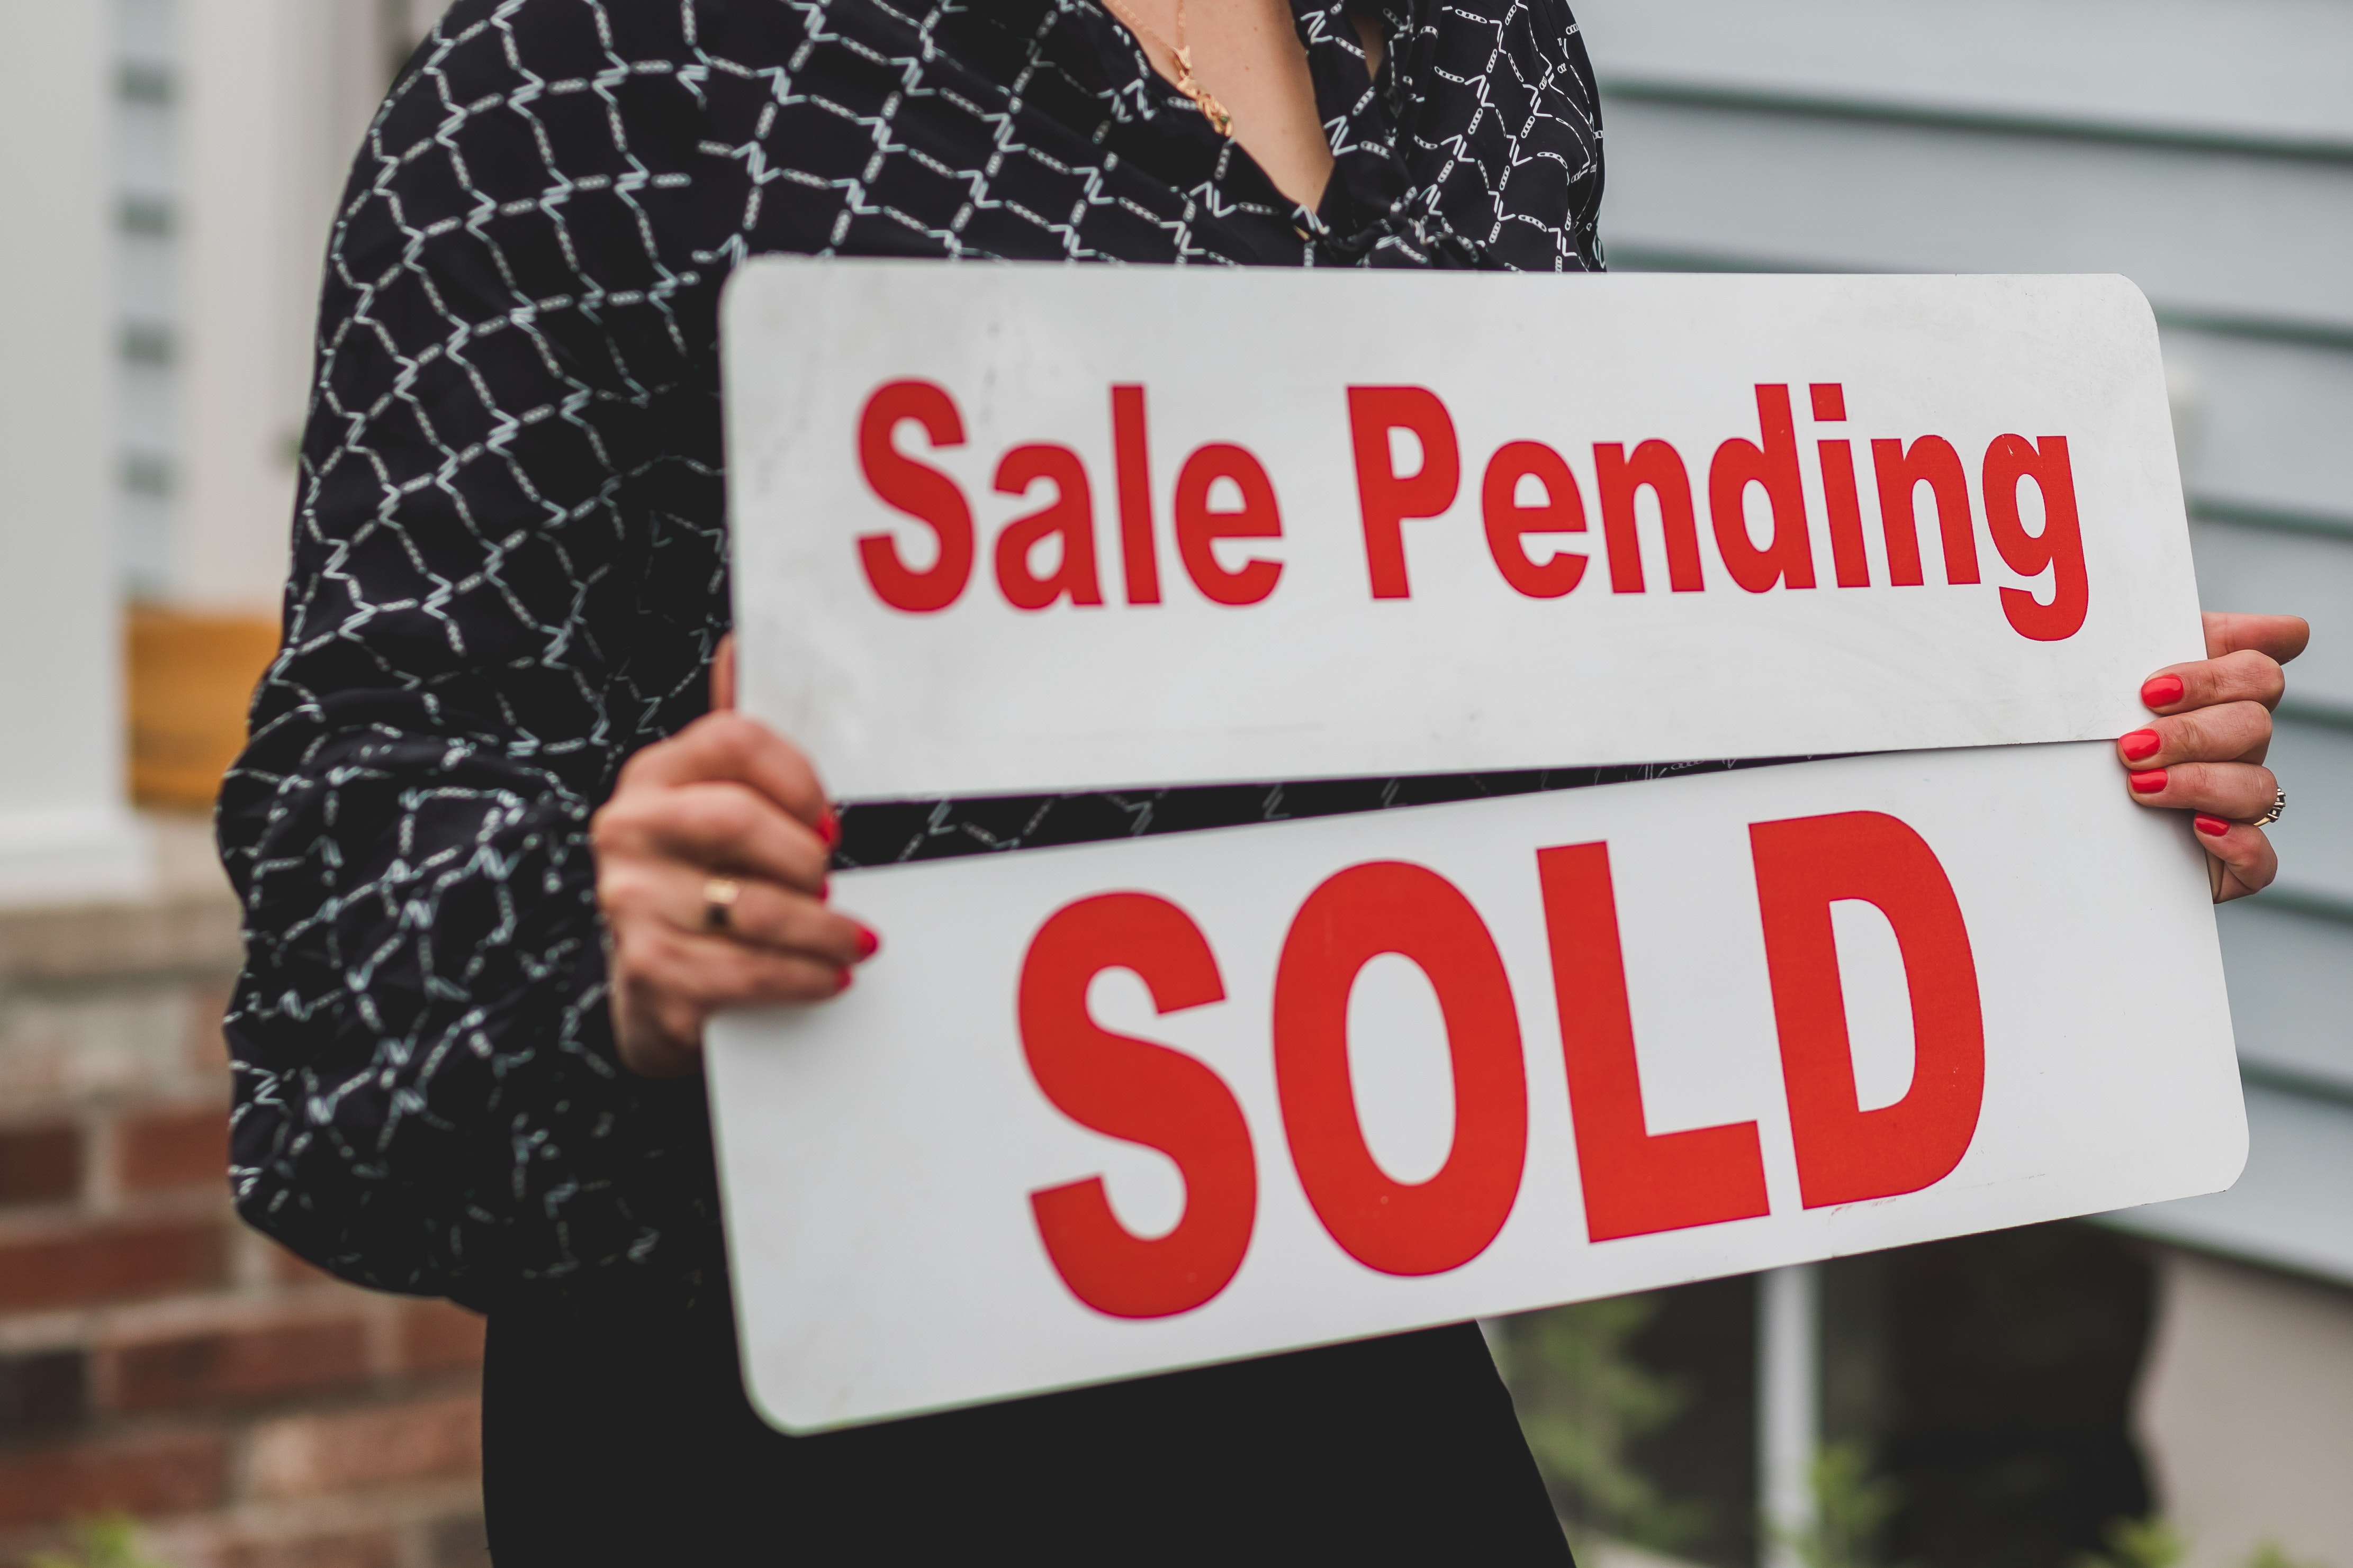 sign, real estate market, sale pending, sold